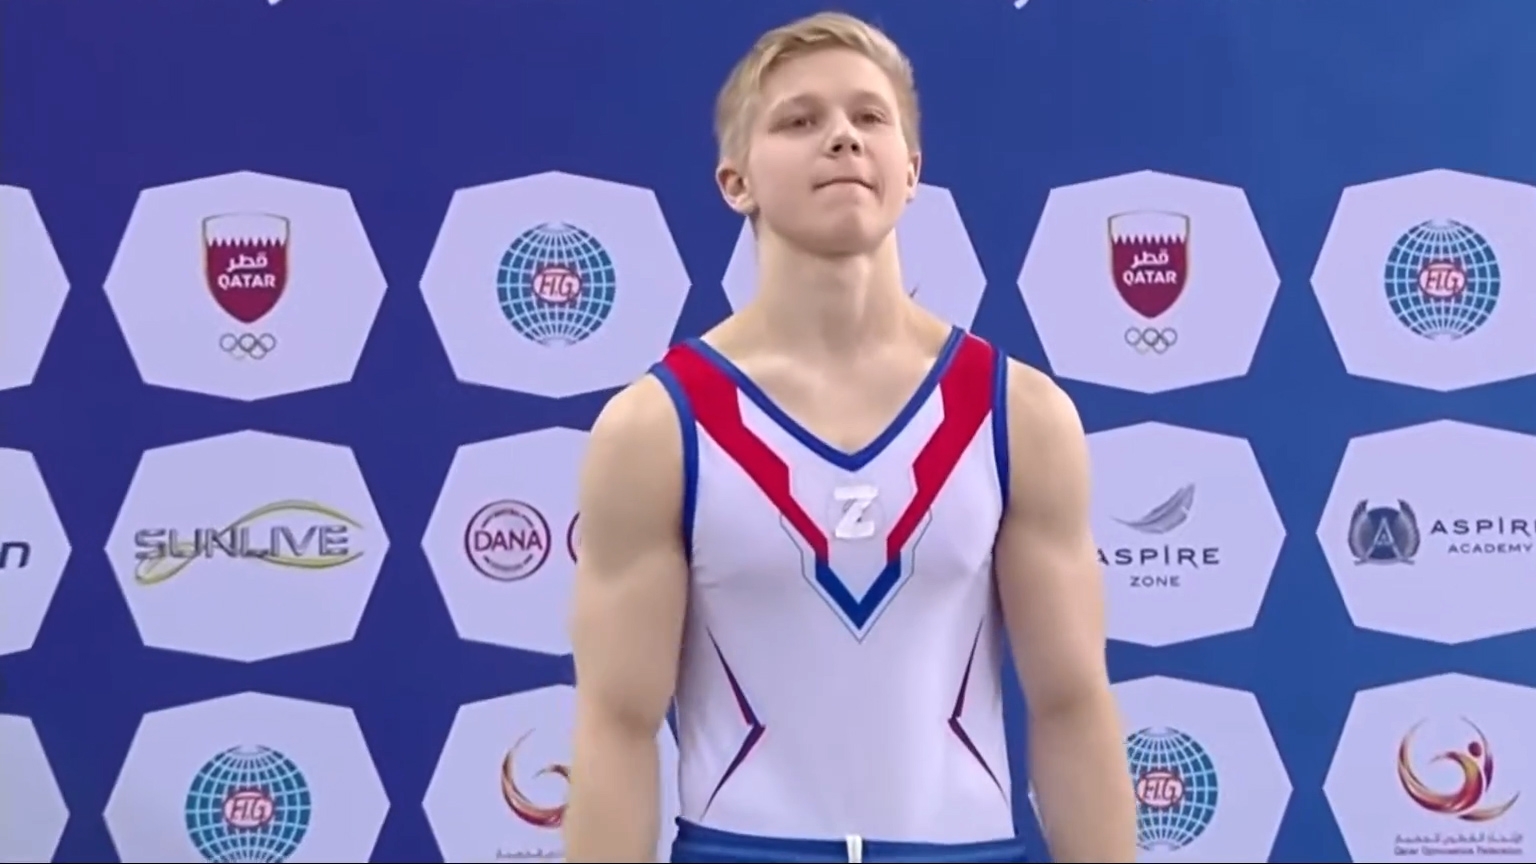 Dura sanción para el joven gimnasta que se subió al podio con la “Z” que llevan pintados los tanques de Rusia en Ucrania